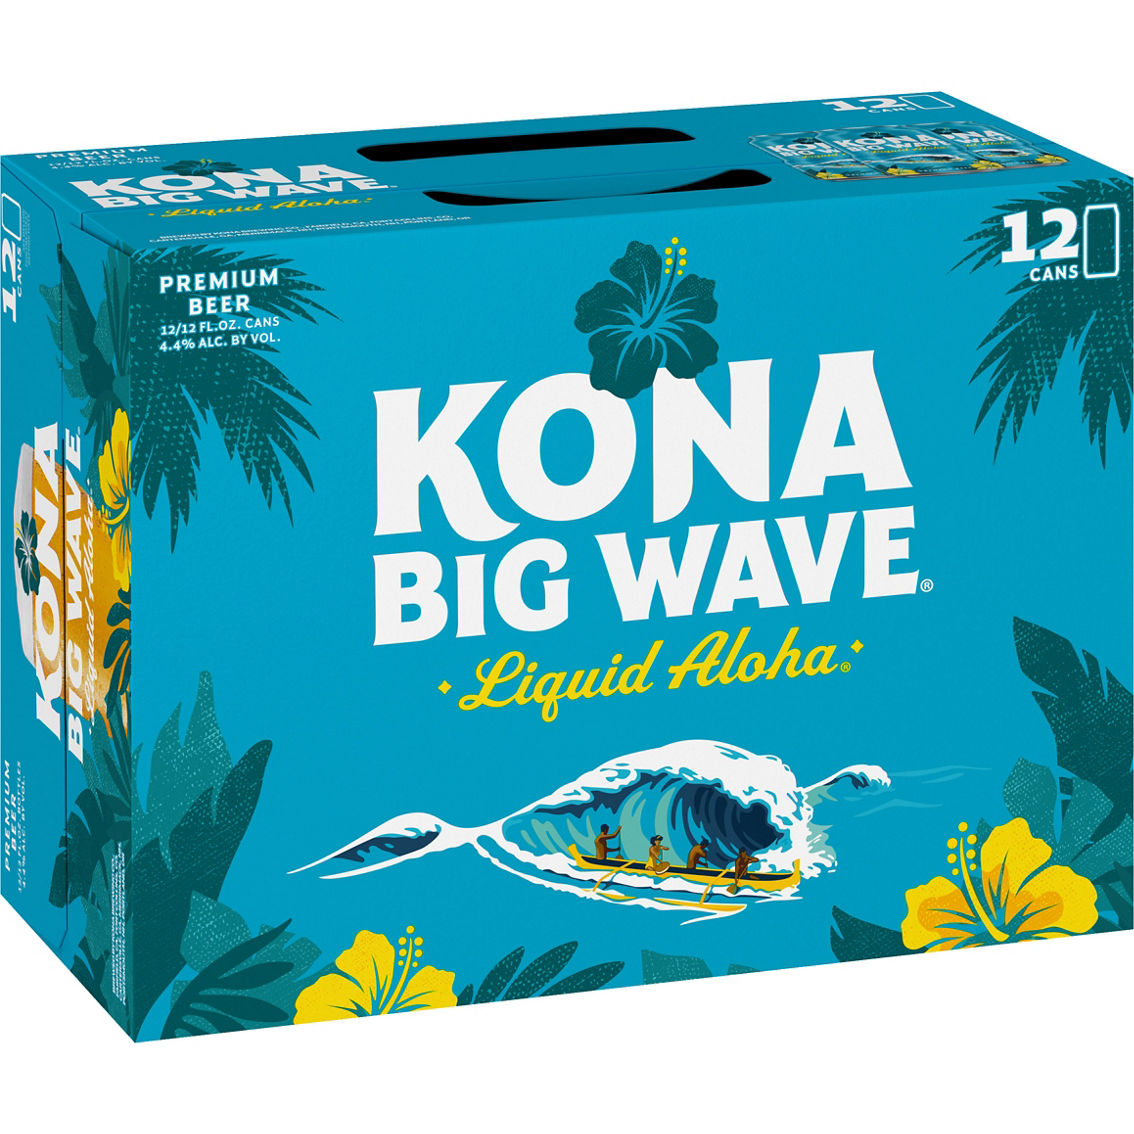 Kona Big Wave Golden Ale 12 oz. Cans 12 pk. - Image 2 of 2